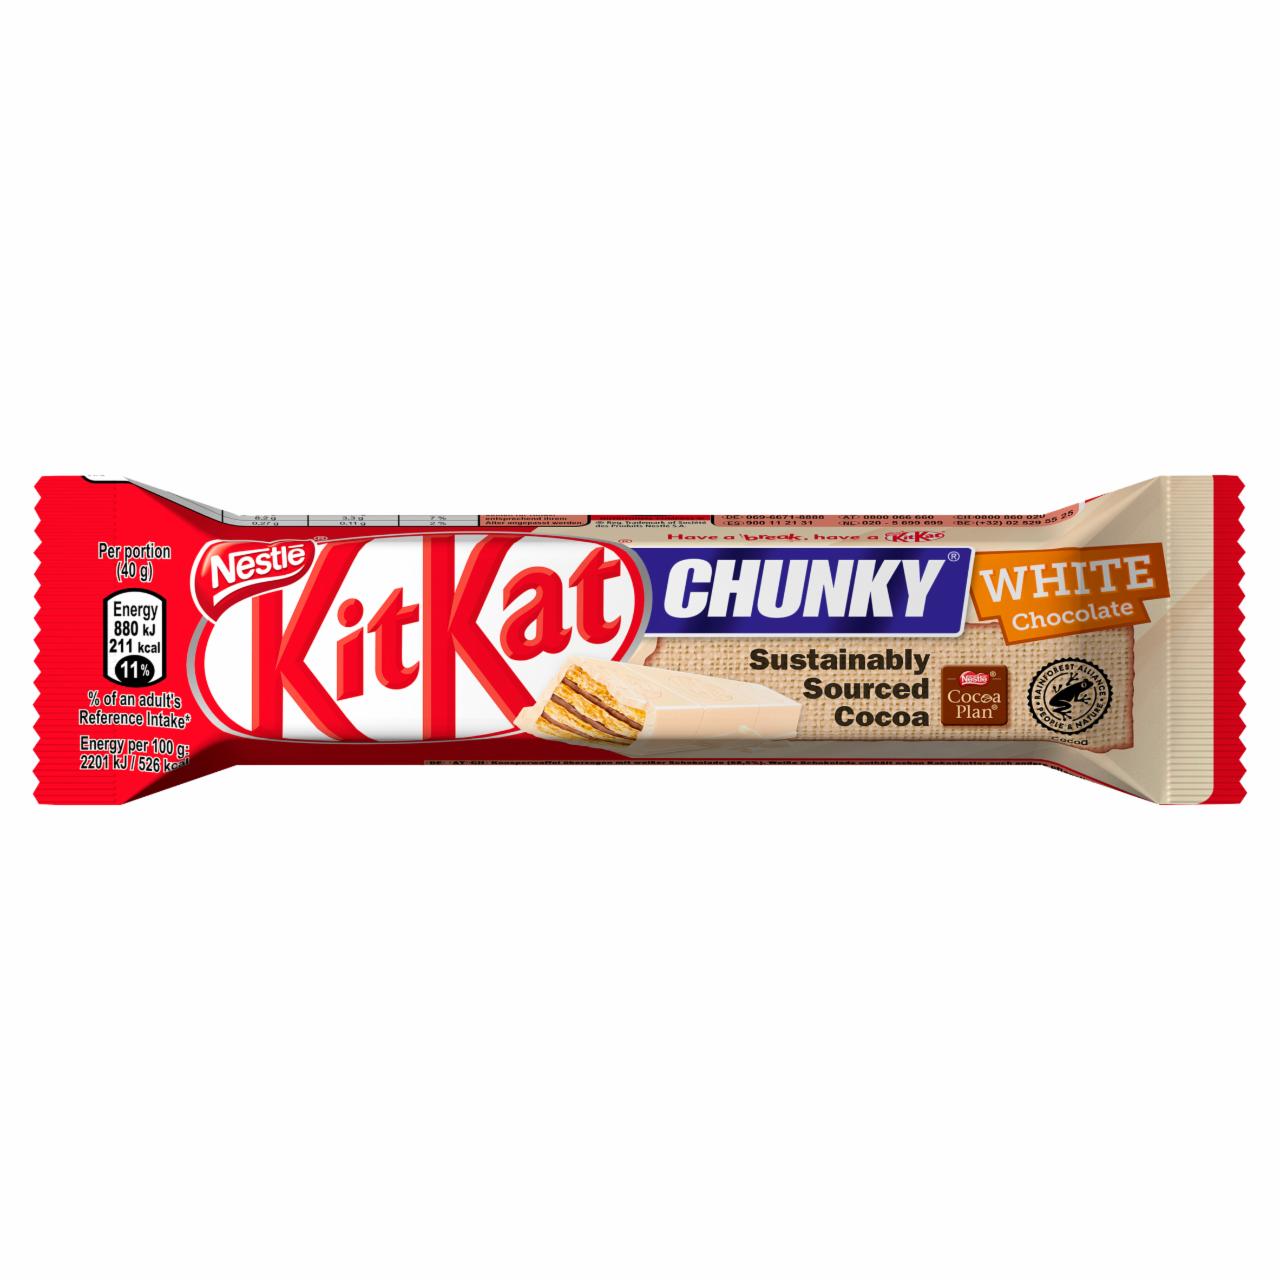 Képek - KitKat Chunky ropogós ostya fehér csokoládéban 40 g